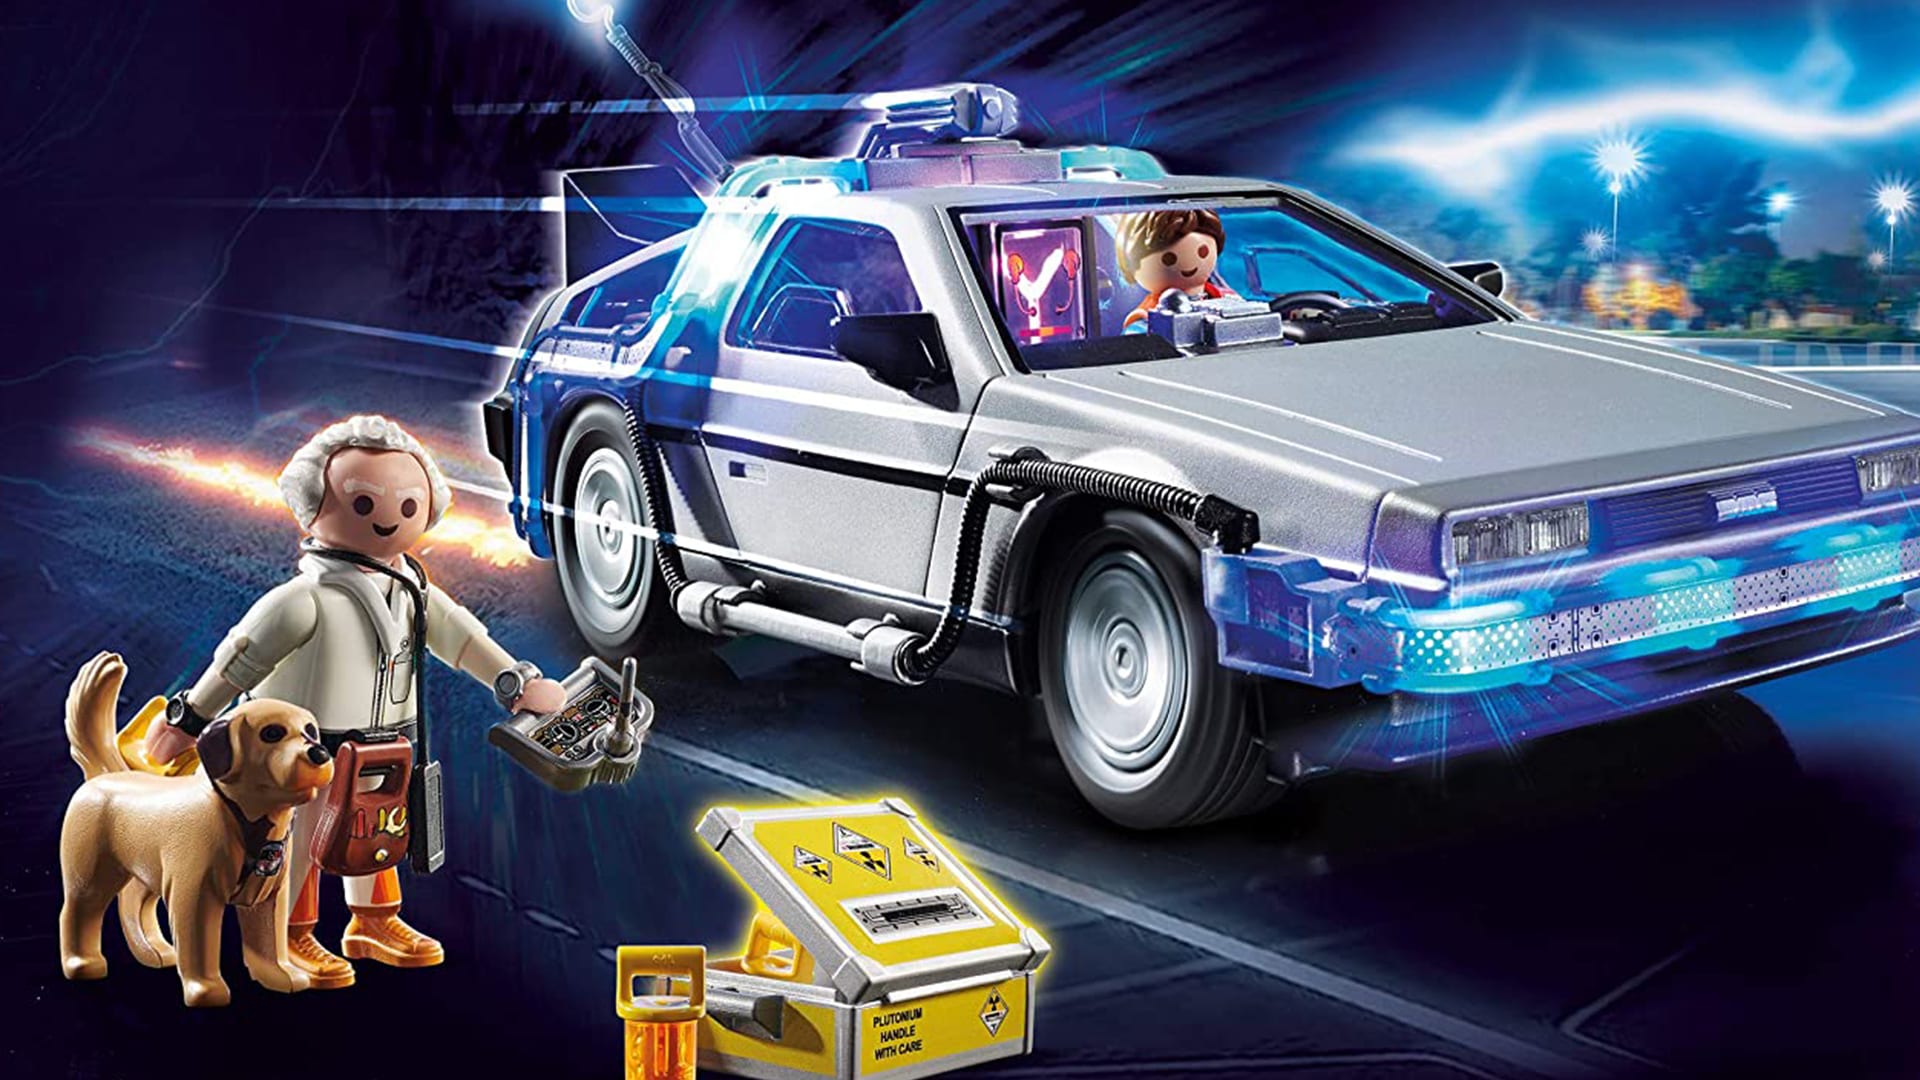 Playmobil: Holt euch den DeLorean aus Zurück in die Zukunft!